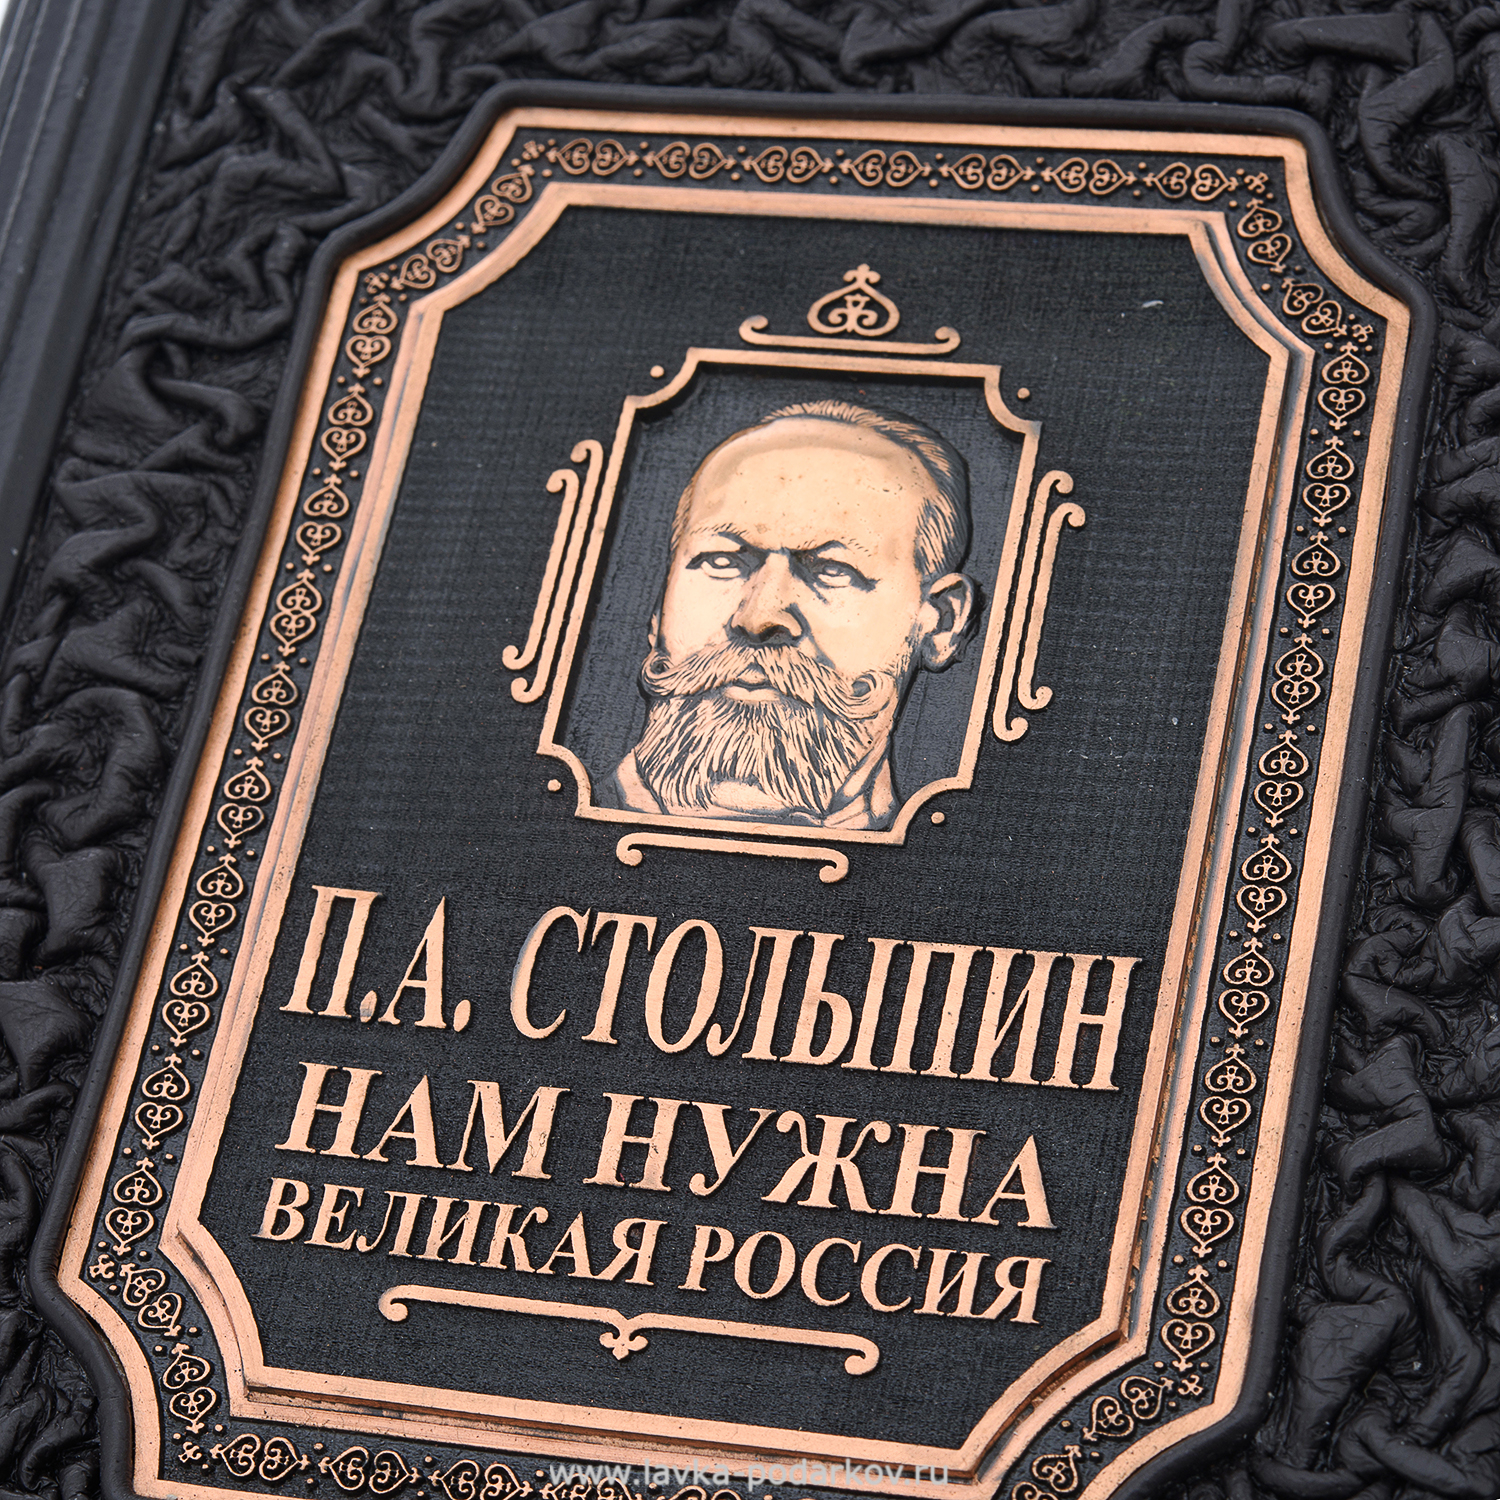 Нам нужна великая россия. Книга о России подарочная. Нам нужна Великая Россия книга.